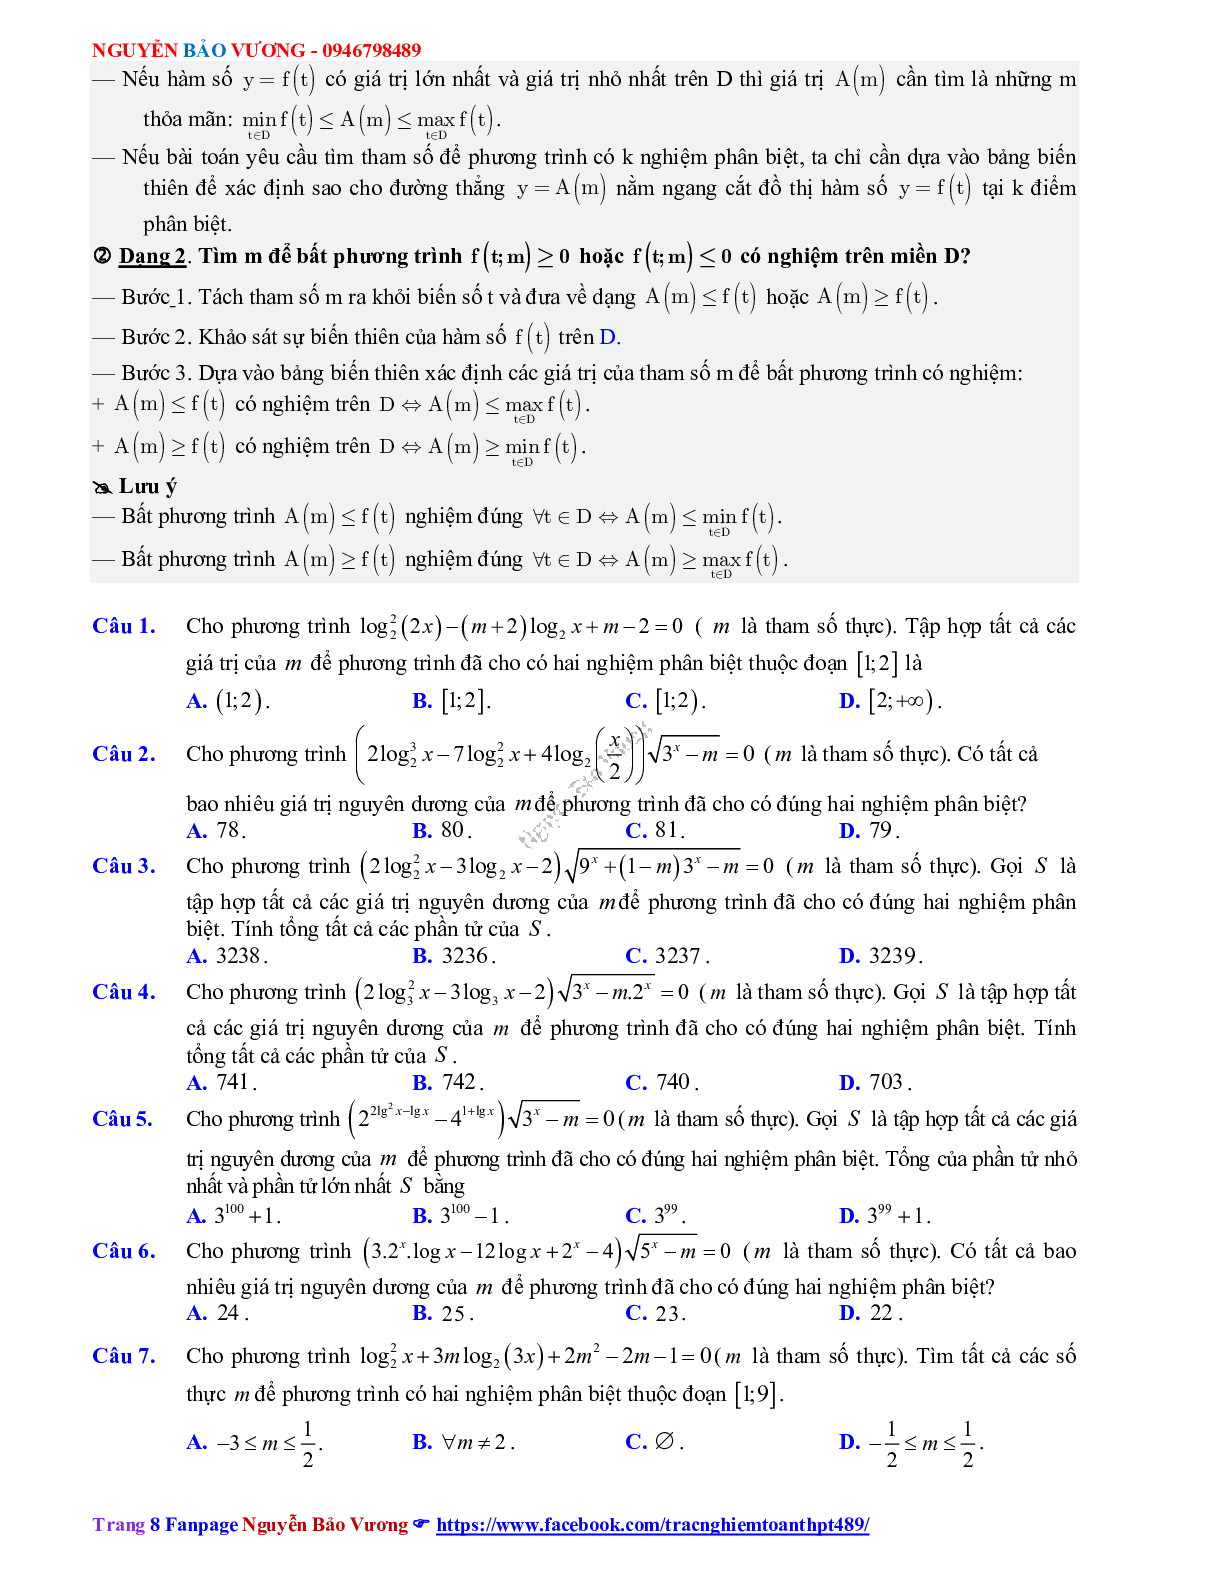 Phương pháp giải về Phương trình, bất phương trình mũ và logarit 2023 (lý thuyết và bài tập) (trang 8)